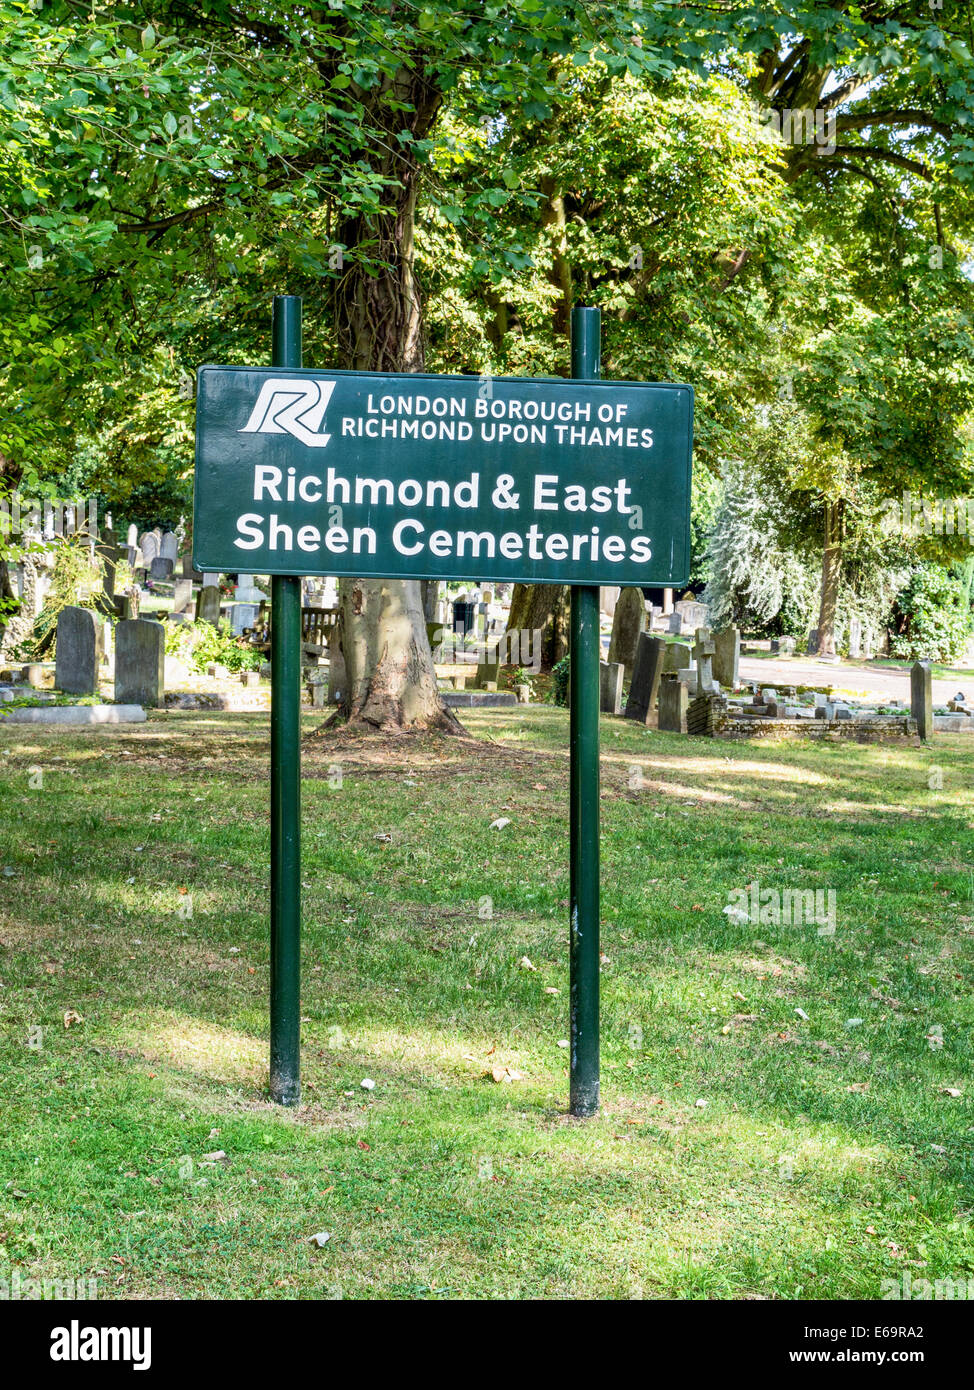 Richmond et à l'Est et le cimetière cimetière de brillance avec signe, pierres tombales et graves - Richmond upon Thames, Surrey, London, UK Banque D'Images